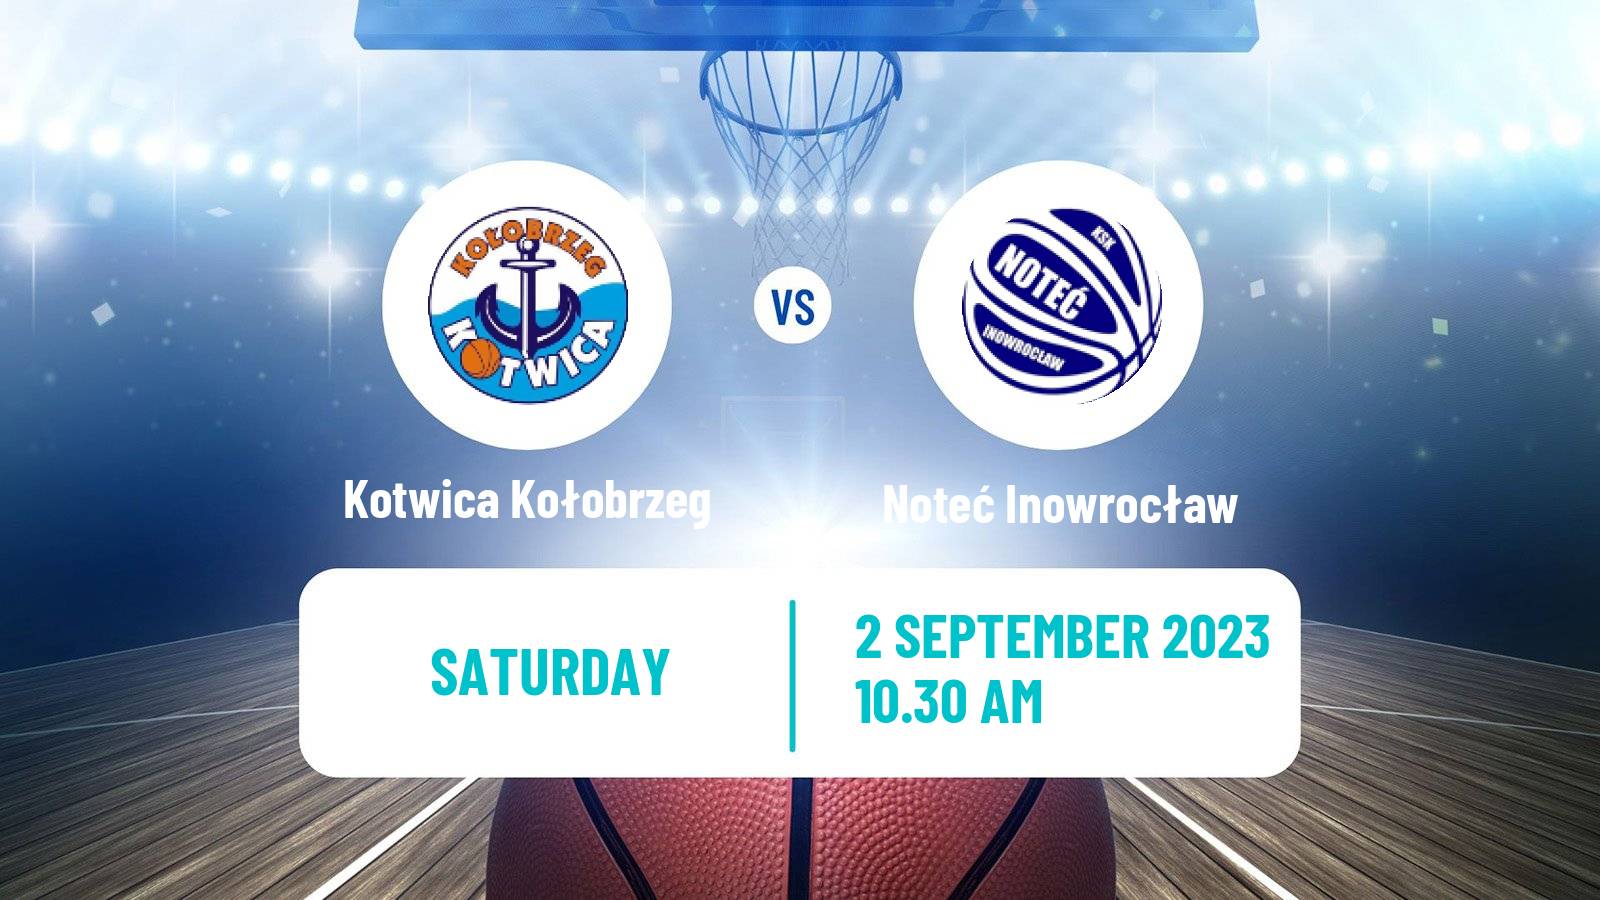 Basketball Club Friendly Basketball Kotwica Kołobrzeg - Noteć Inowrocław